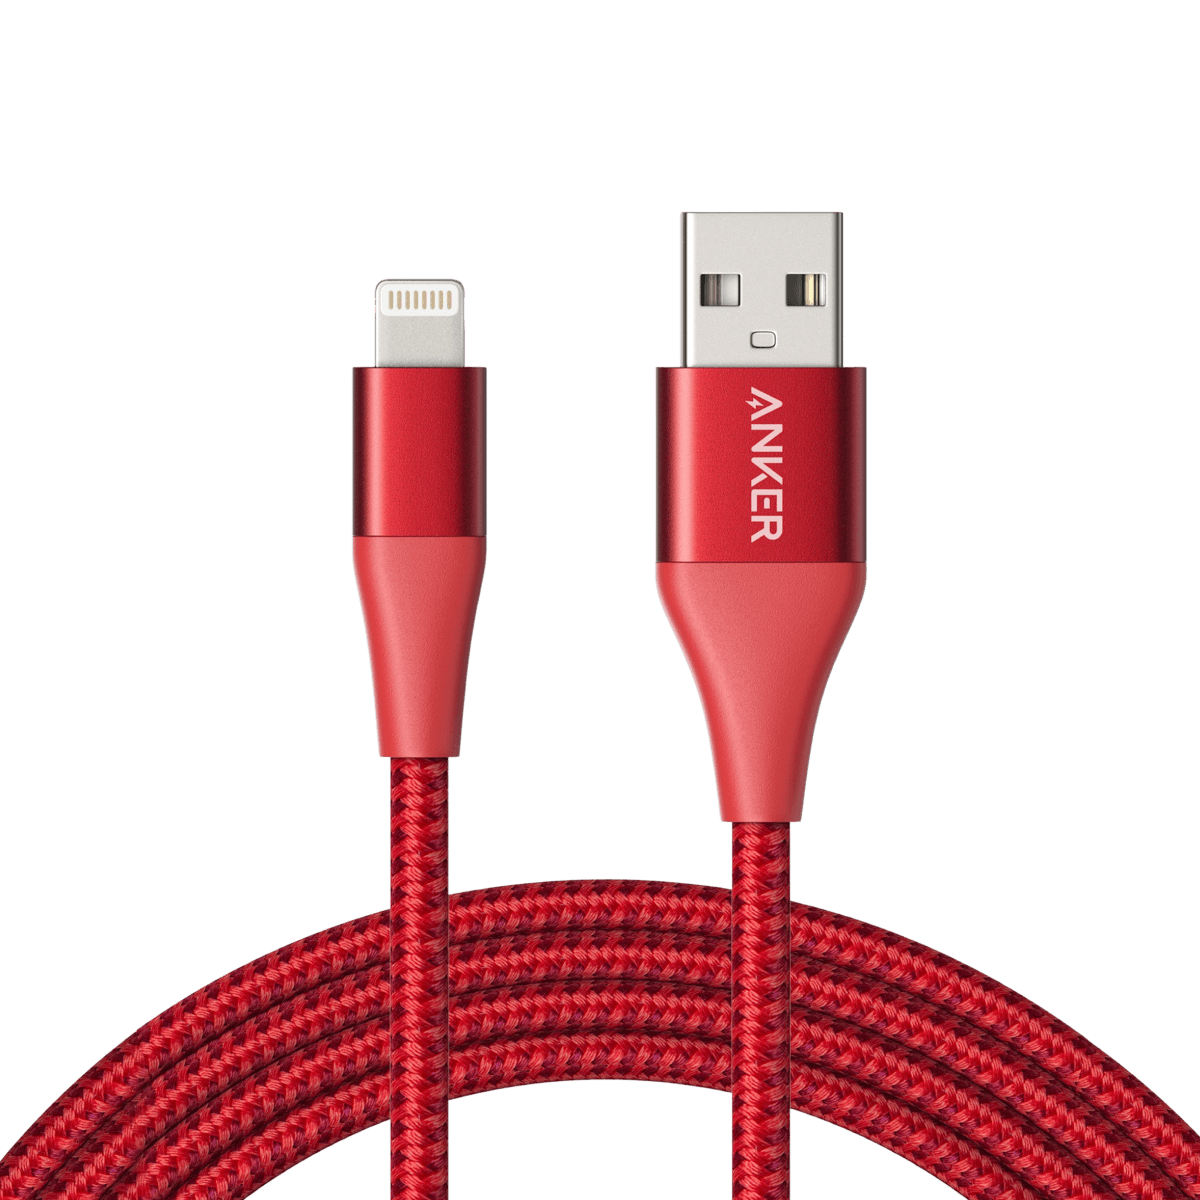 Anker <b>551</b> USB-A to Lightning Cable (1 ft / 3 ft / 6 ft / 10 ft Nylon)